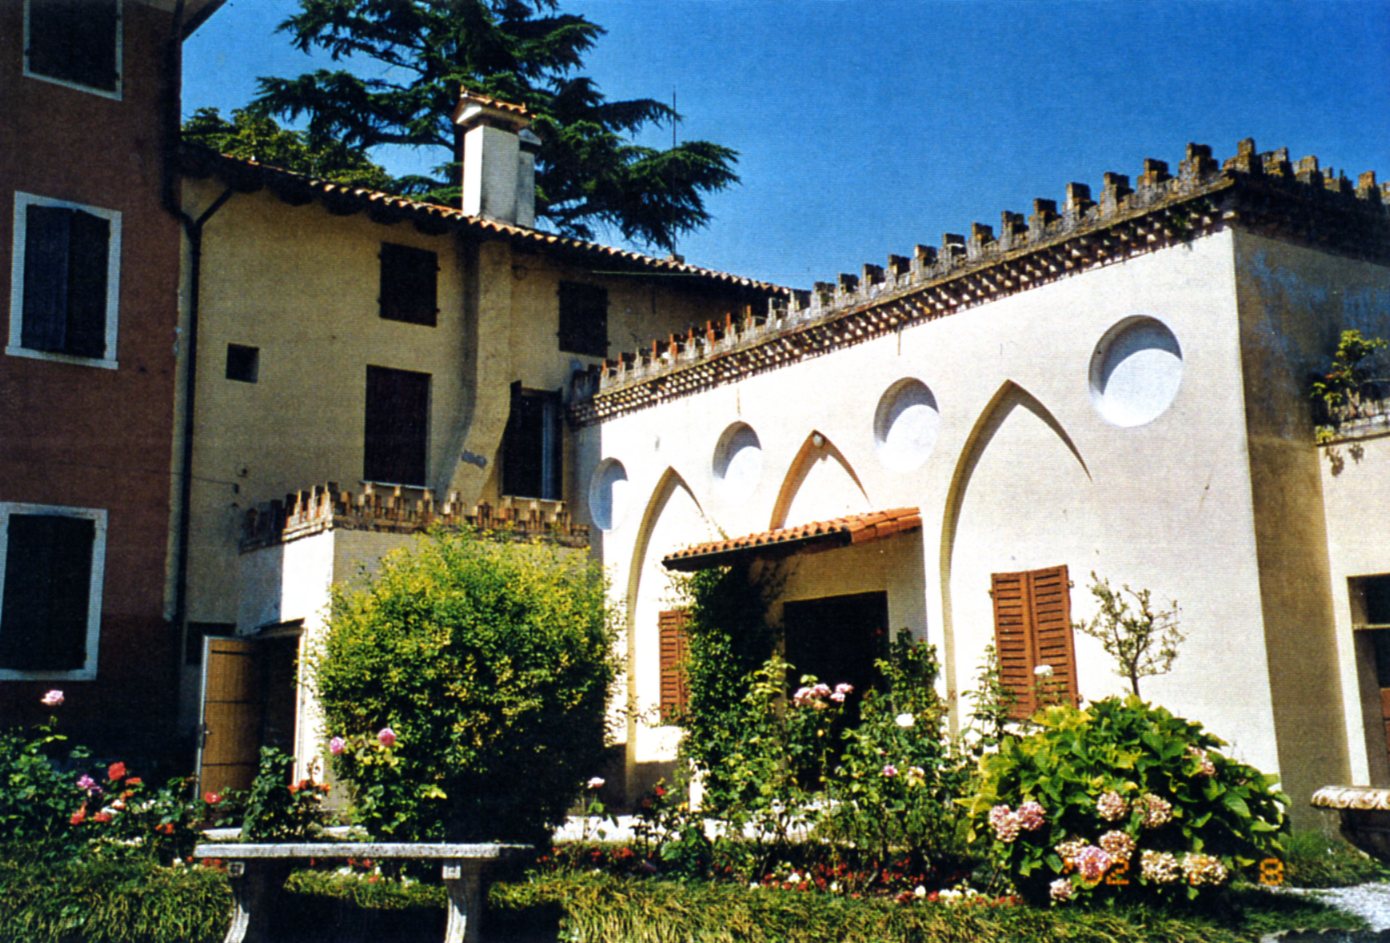 Annessi nord - Complesso di Villa Bornancini (barchessa) - Cinto Caomaggiore (VE)  (XVII, fine)